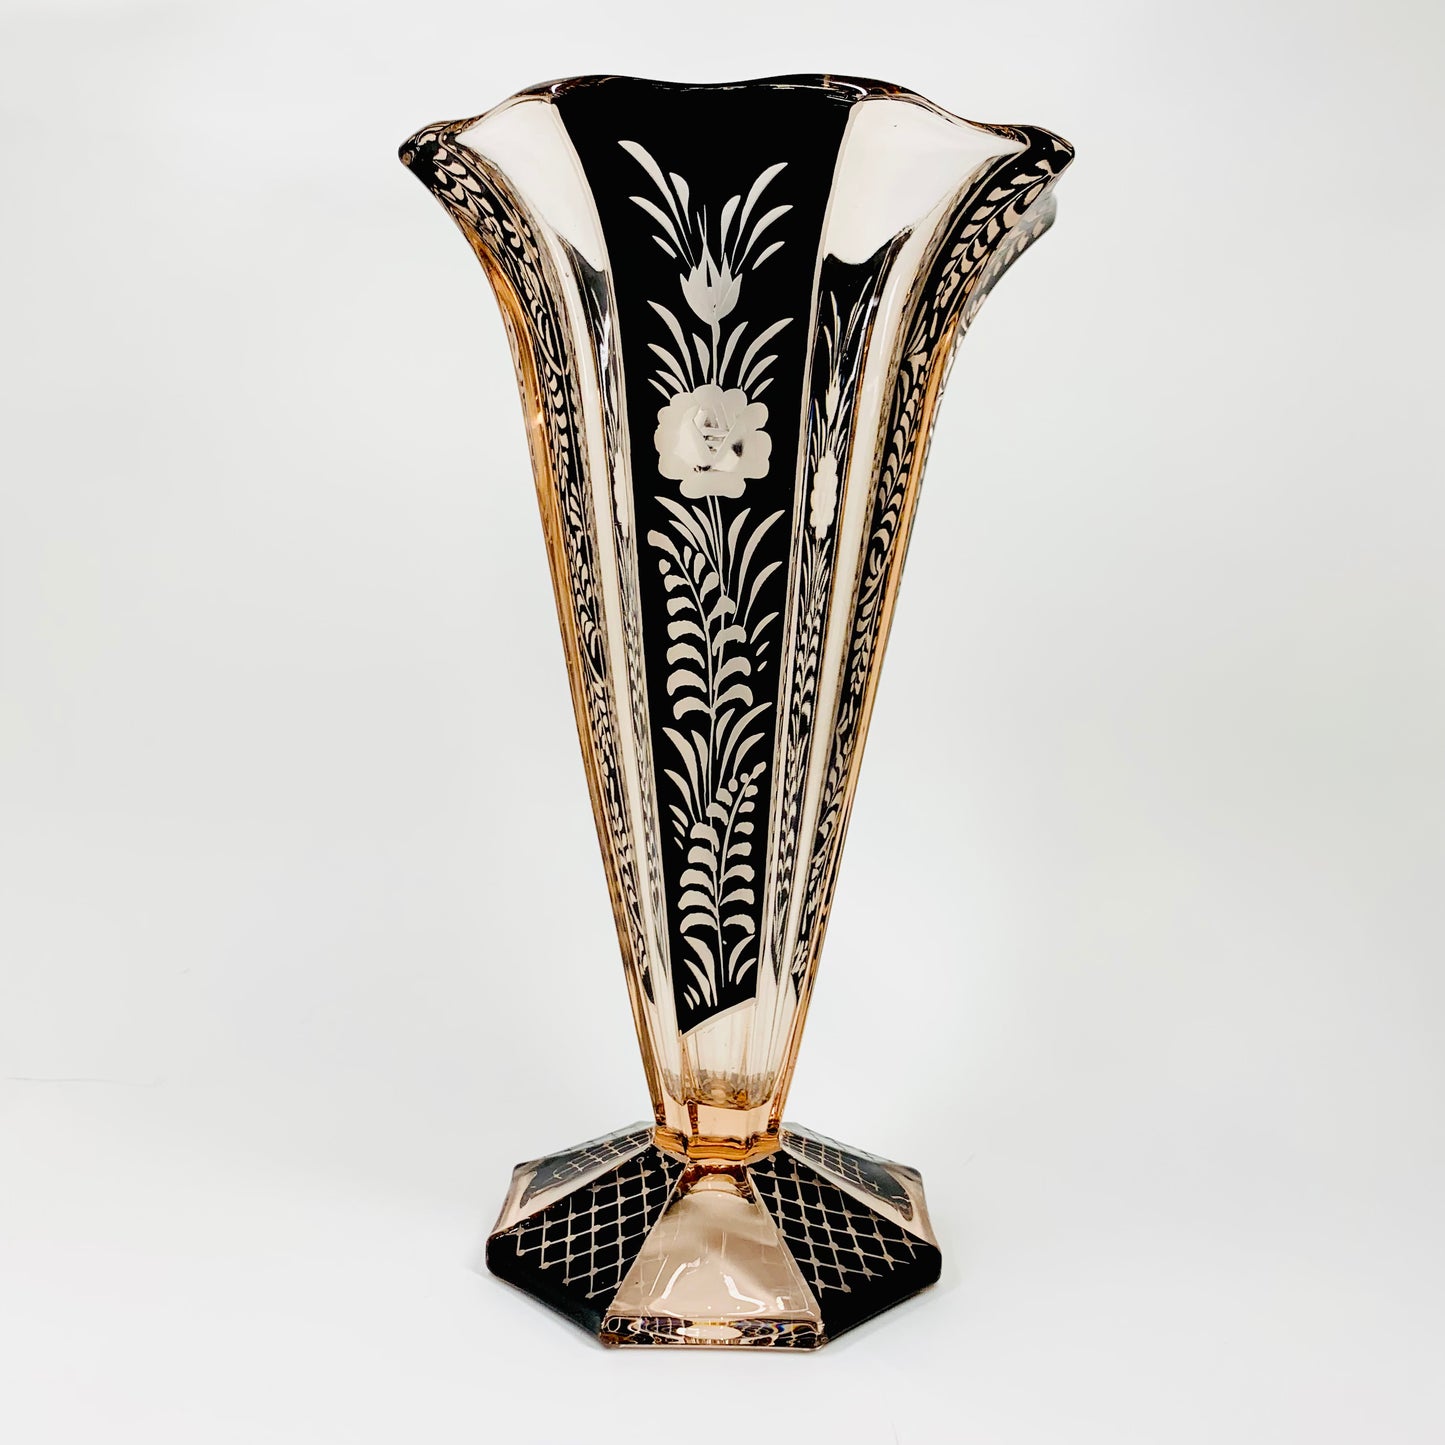 Antique Art Nouveau pink and black enamel glass vase by Karl Palda